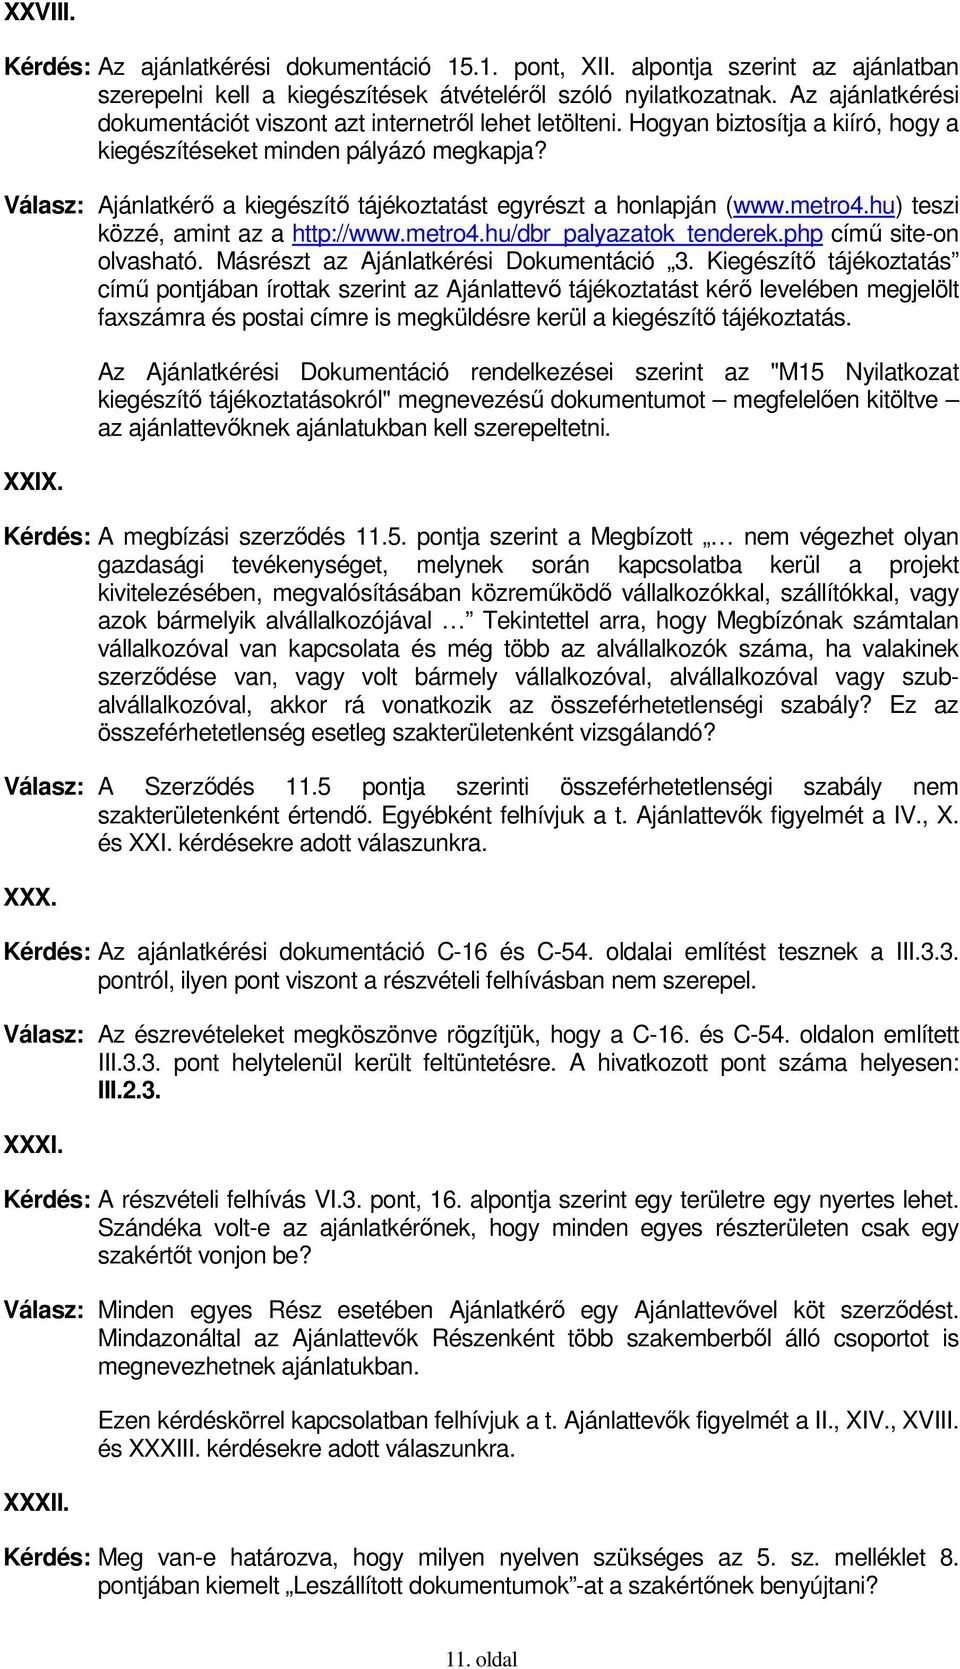 Válasz: Ajánlatkérı a kiegészítı tájékoztatást egyrészt a honlapján (www.metro4.hu) teszi közzé, amint az a http://www.metro4.hu/dbr_palyazatok_tenderek.php címő site-on olvasható.